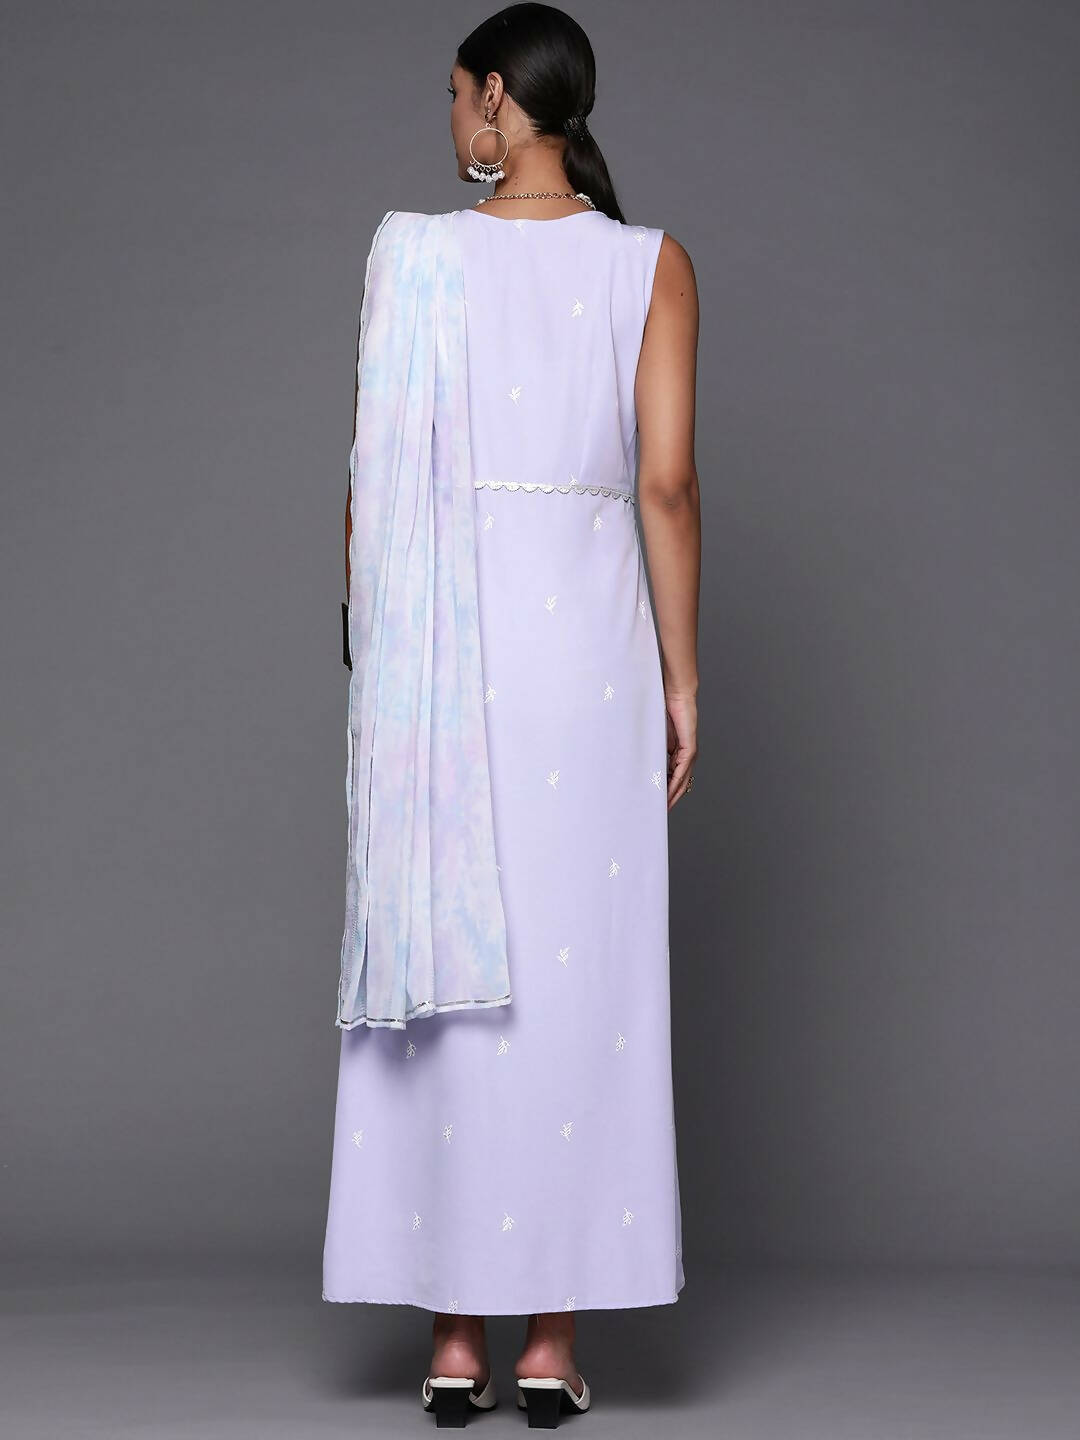 Designer Floral Dresses Online for Women | Indya